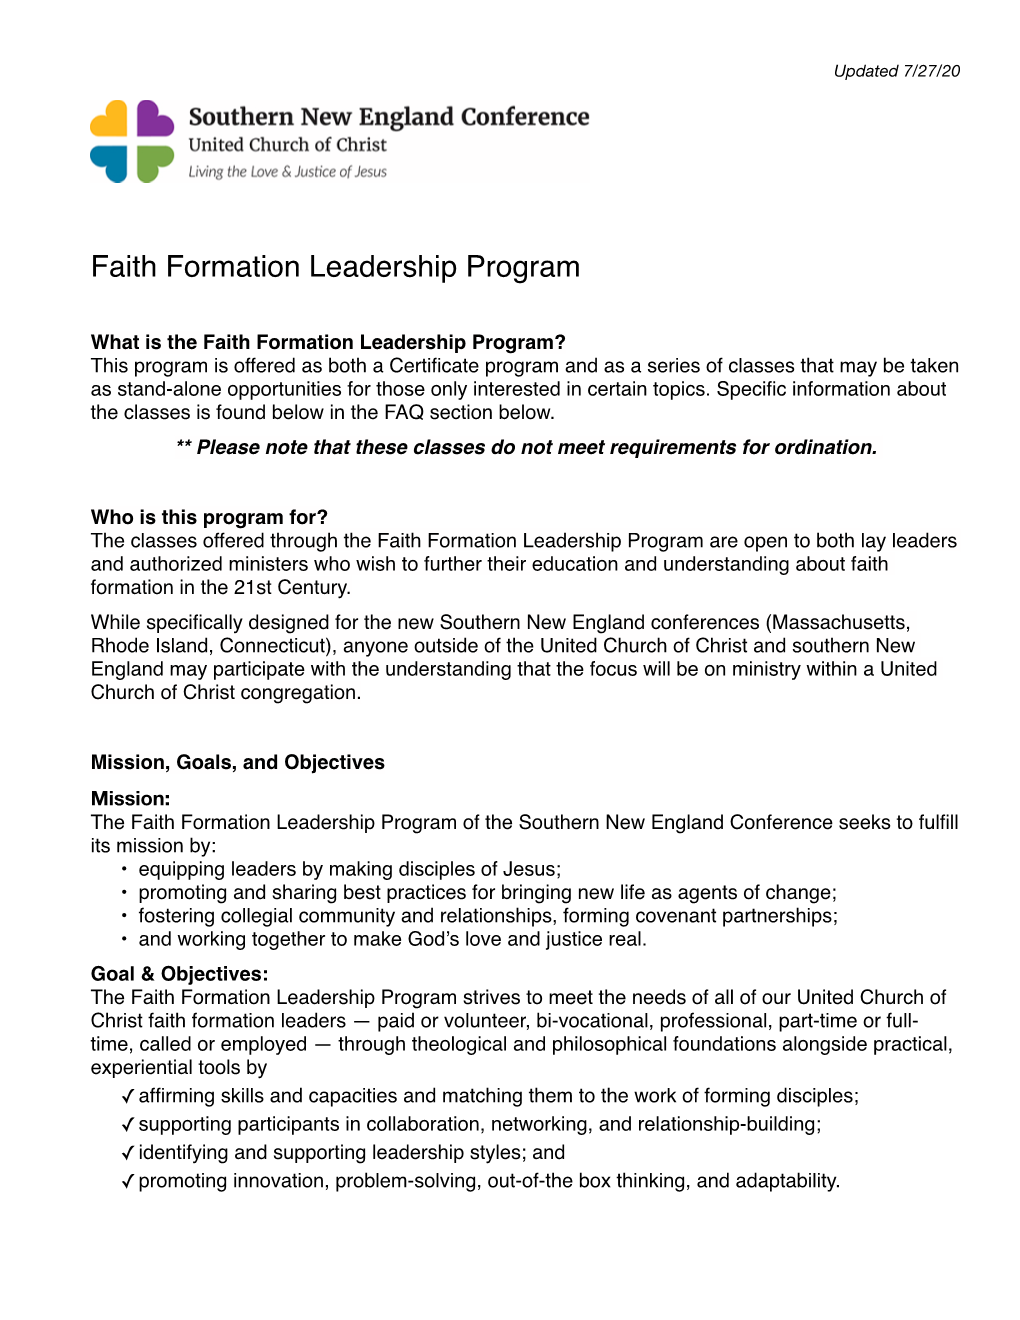 Faith Formation Leadership Program